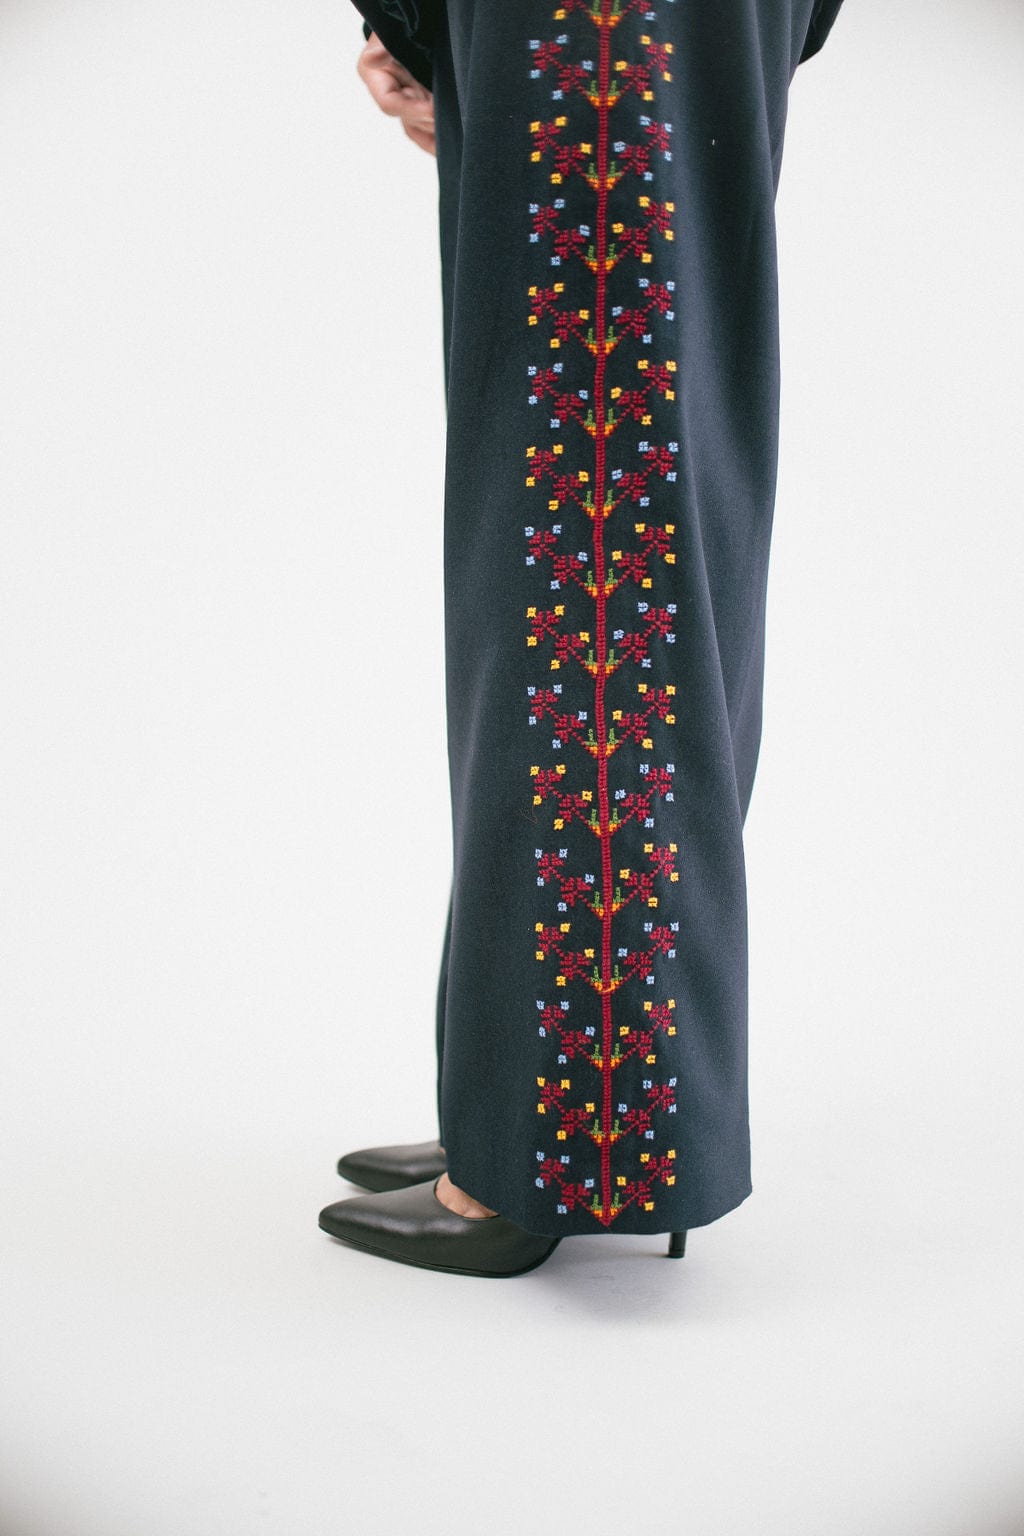 Fuschia 2-Piece Trouser Suit - Women from Yumi UK